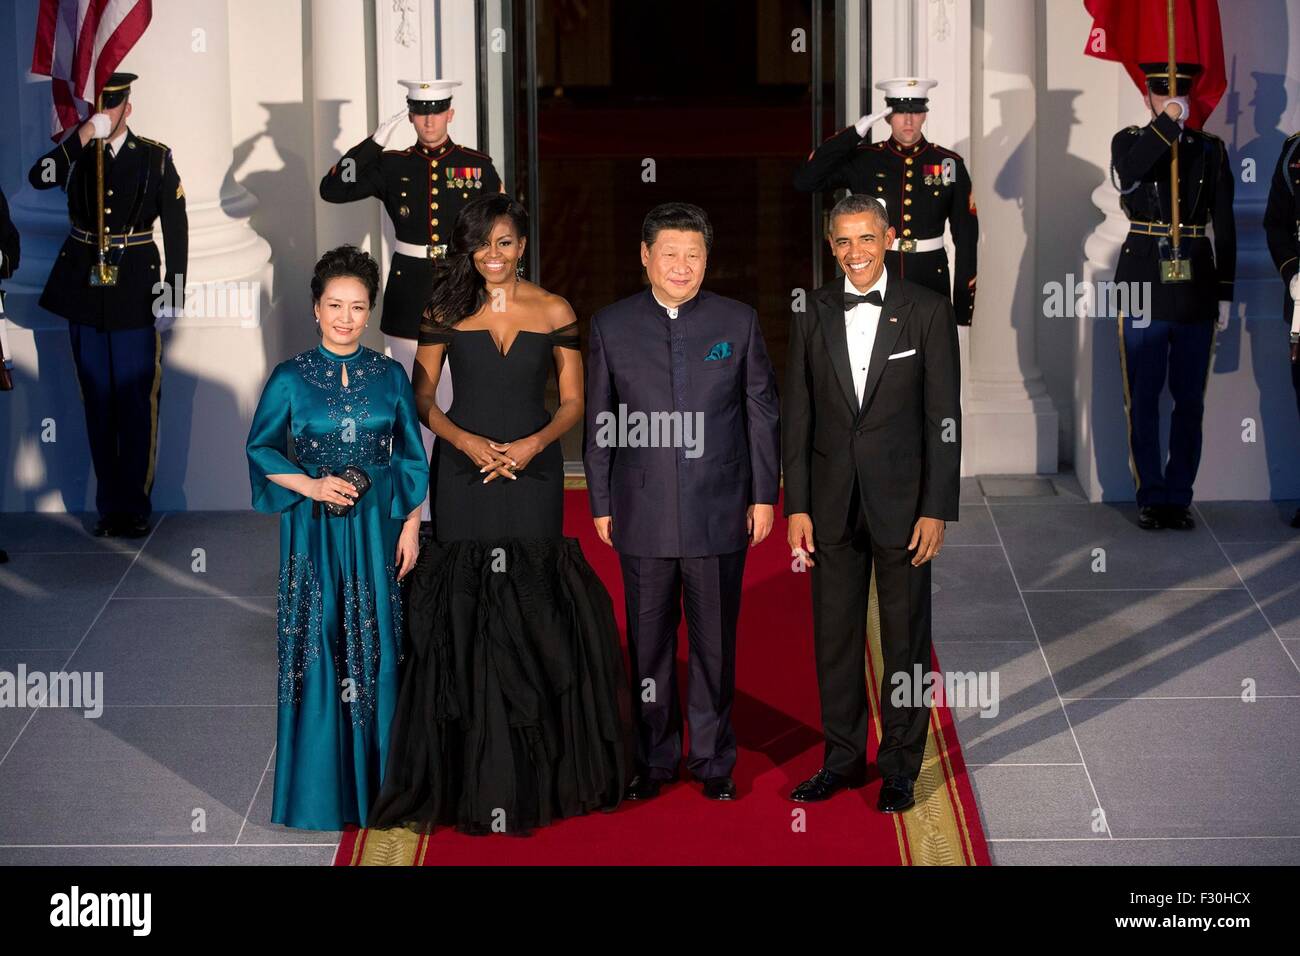 Washington DC, USA. 25. Sep 2015. US-Präsident Barack Obama und First Lady Michelle Obama, chinesischen Staatspräsidenten Xi Jinping Madame Peng Liyuan stehen für ein Foto auf dem nördlichen Portikus des weißen Hauses 25. September 2015 in Washington, DC. Stockfoto